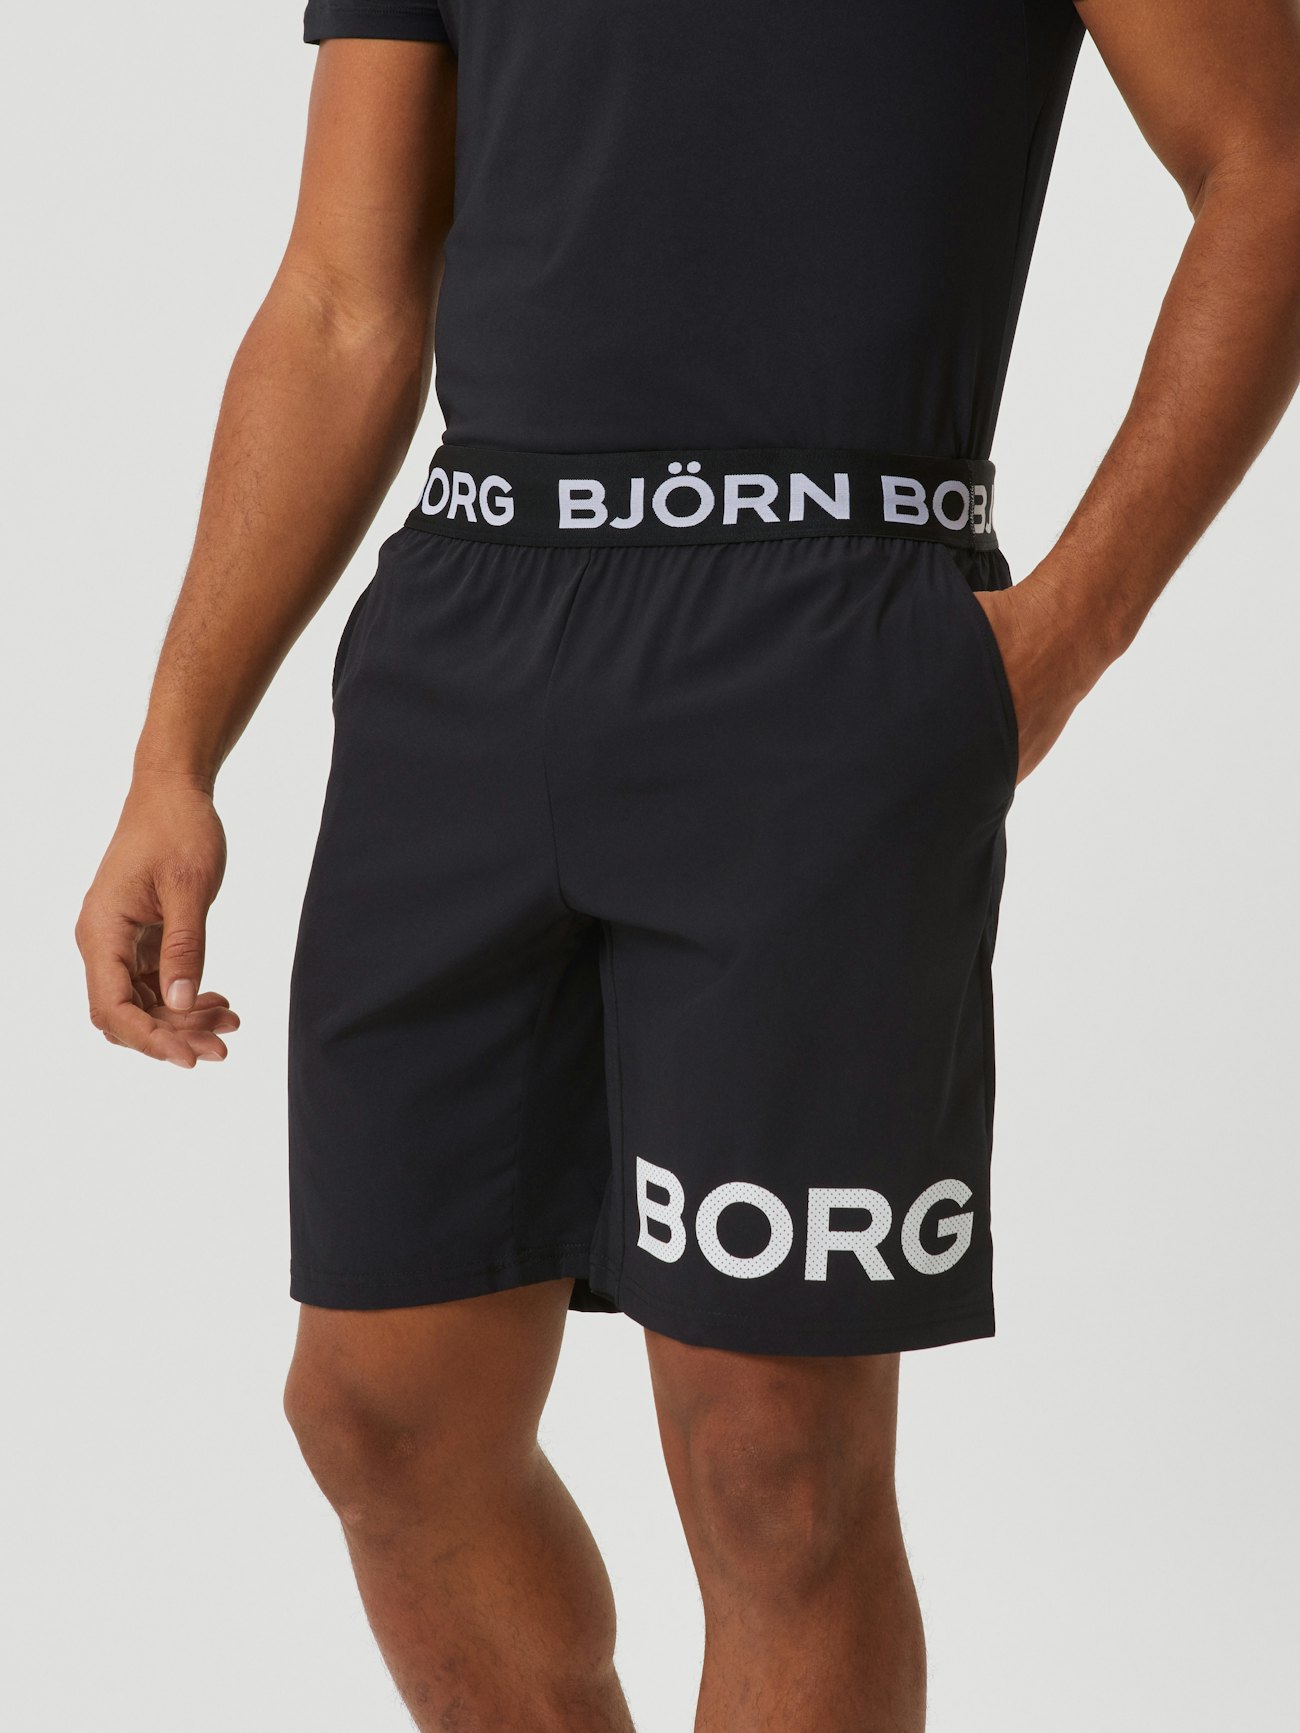 Borg Running Short Tights - Black Beauty